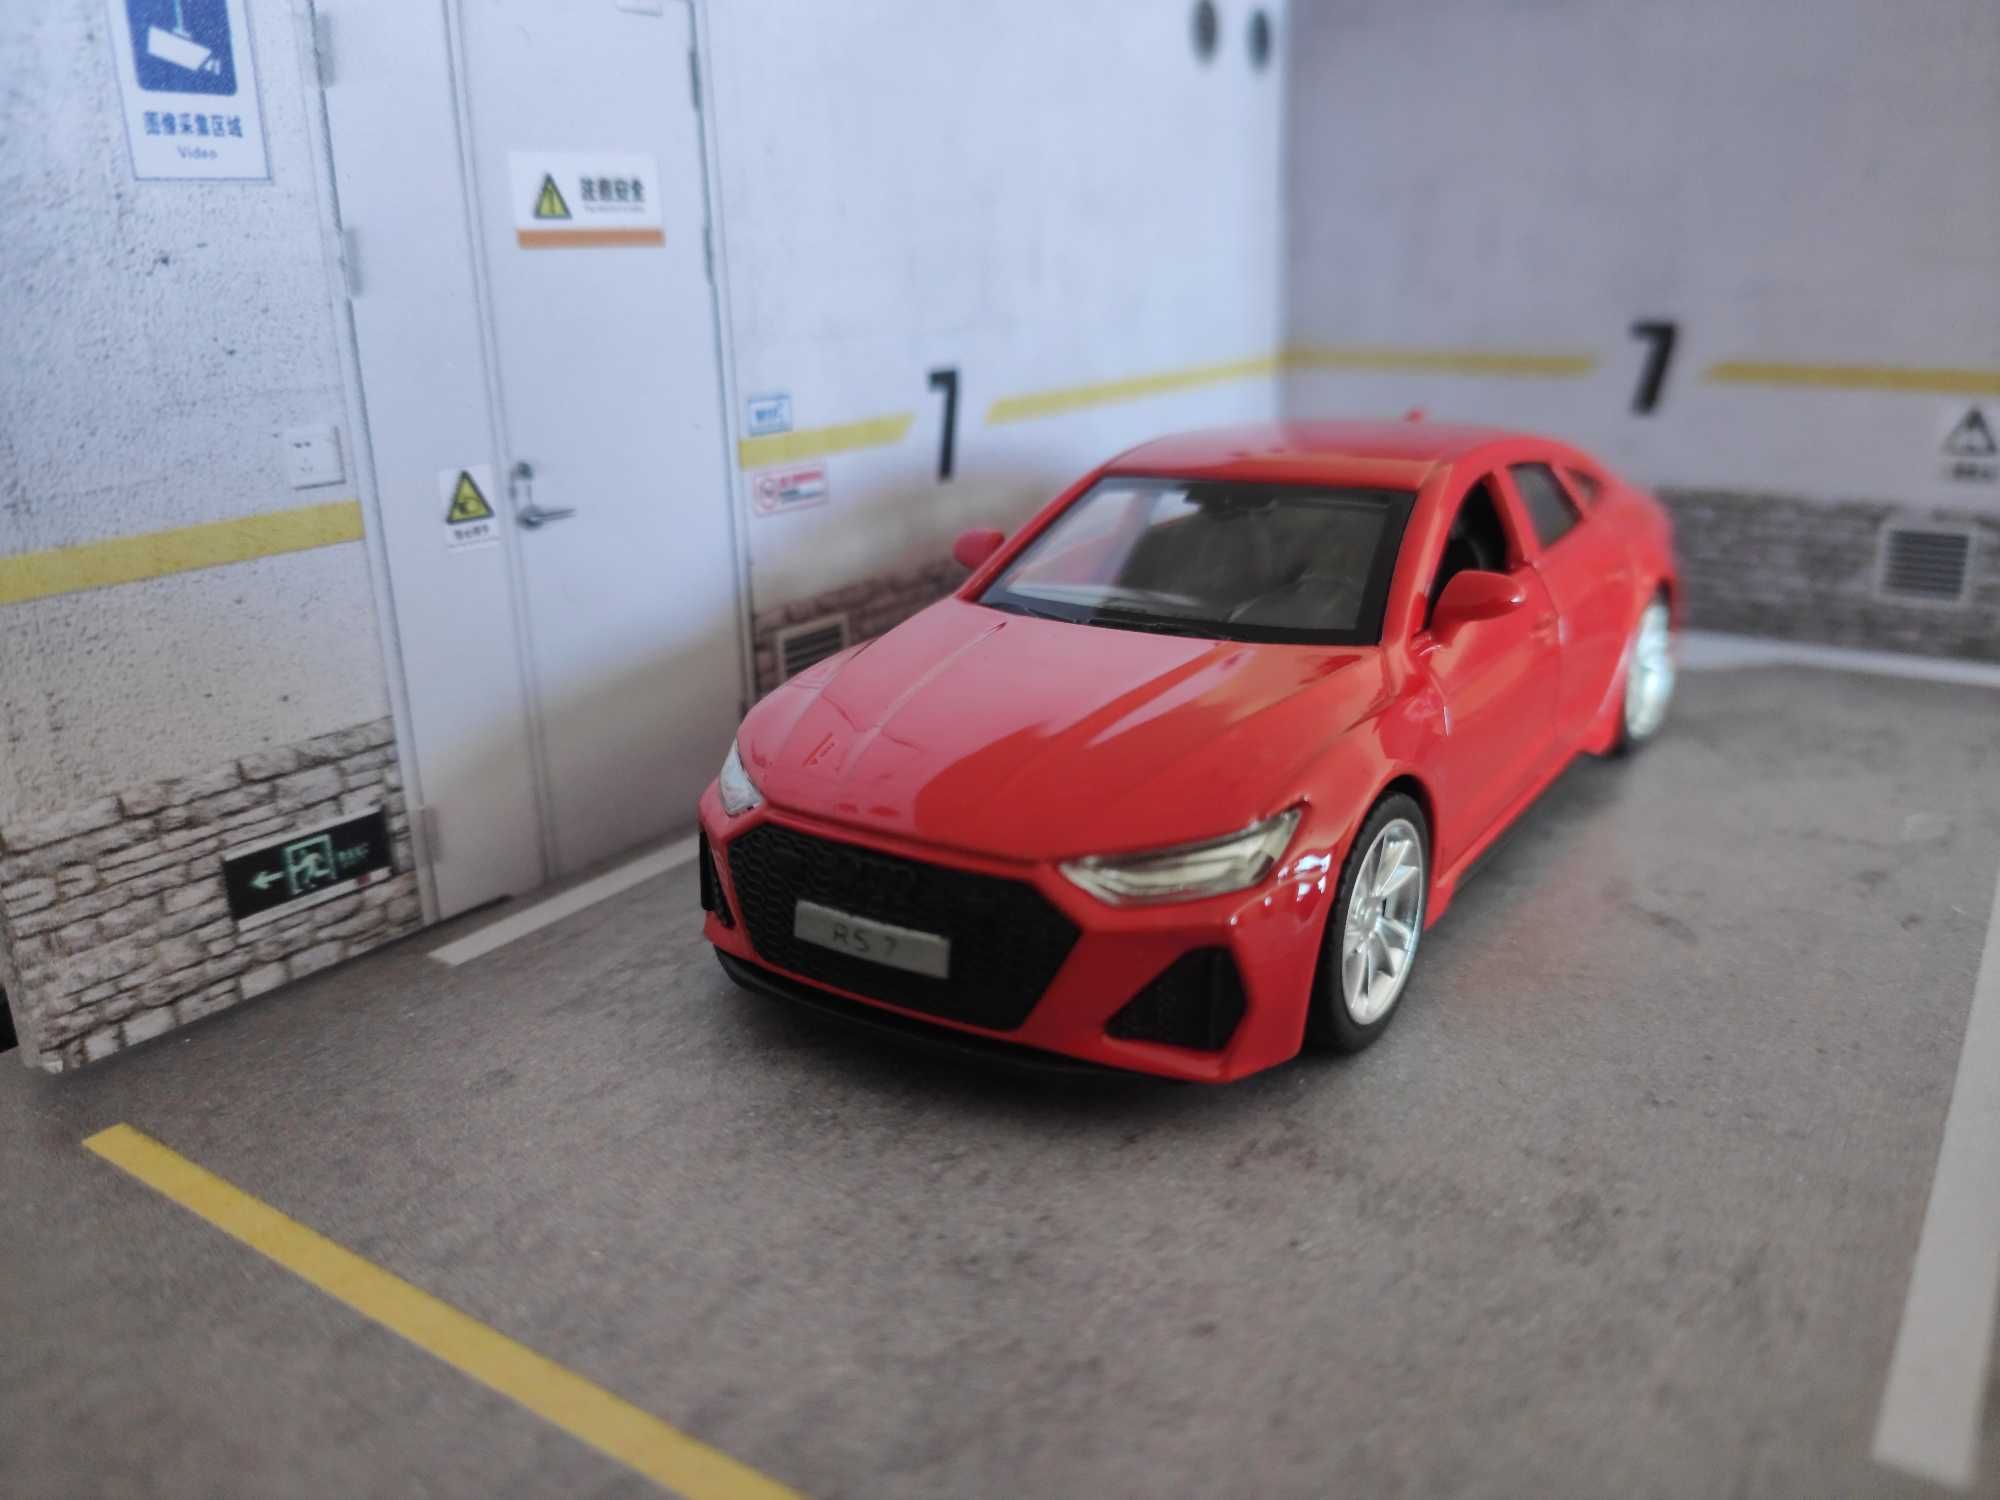 Carro Miniatura Audi RS7 em escala 1:43 - Oferta Envio